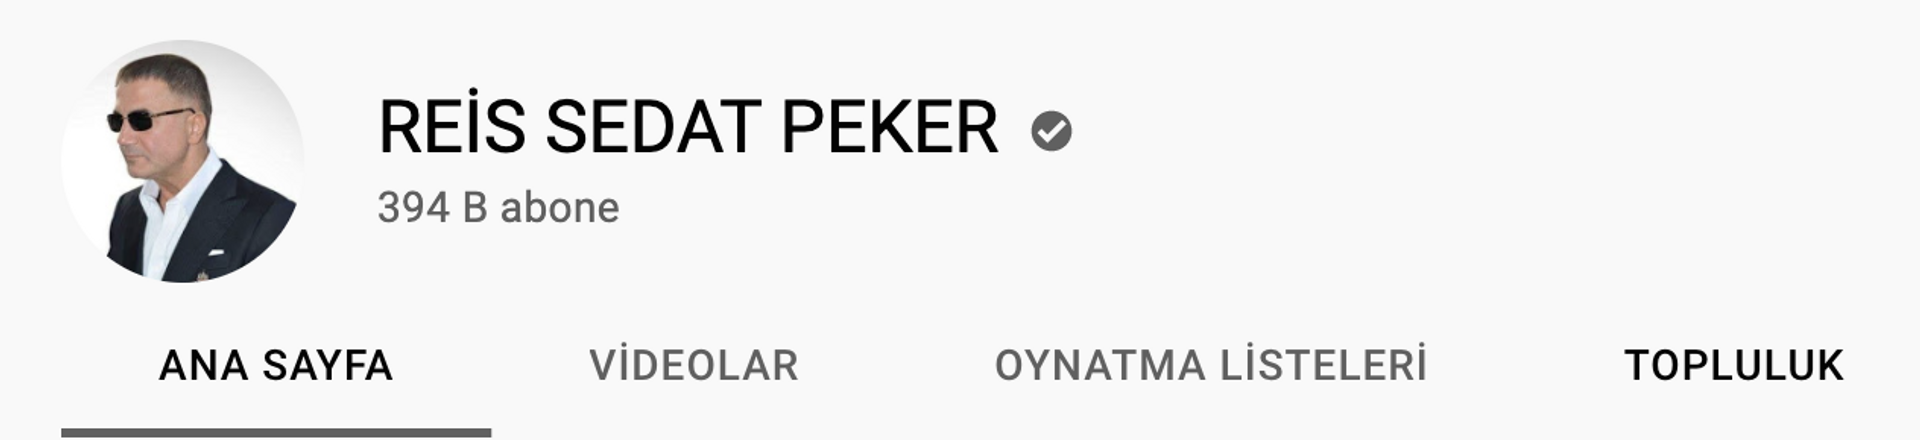 YouTube'dan Sedat Peker kararı - Sputnik Türkiye, 1920, 21.05.2021